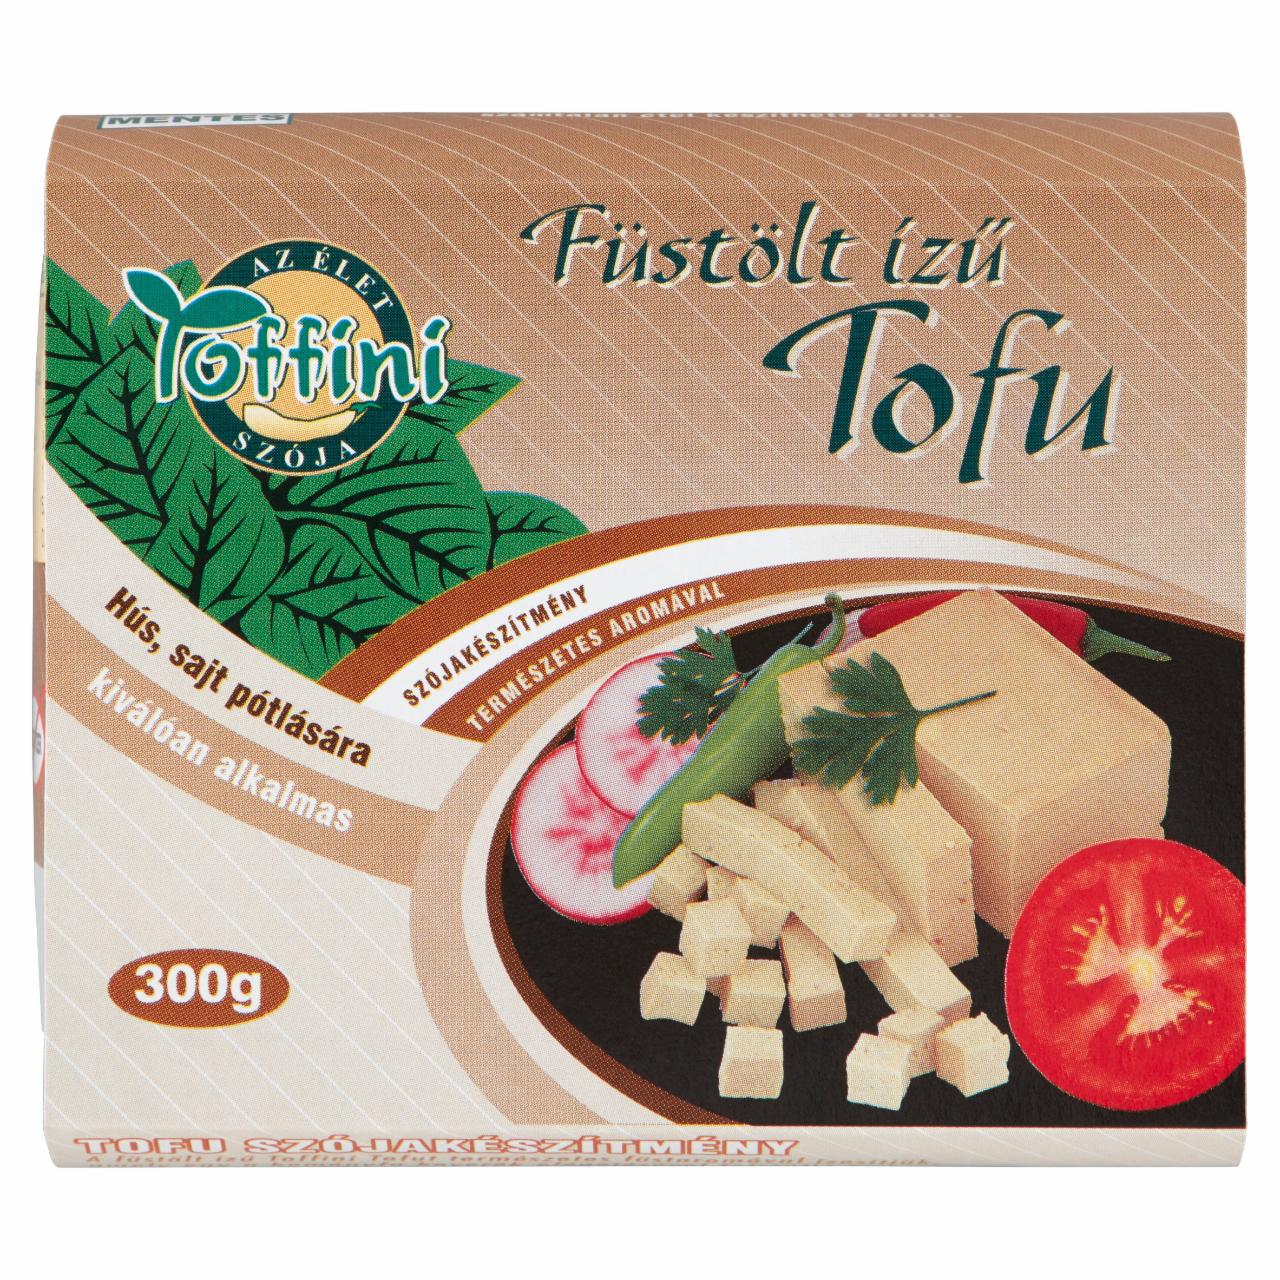 Képek - Toffini füstölt ízű tofu 300 g